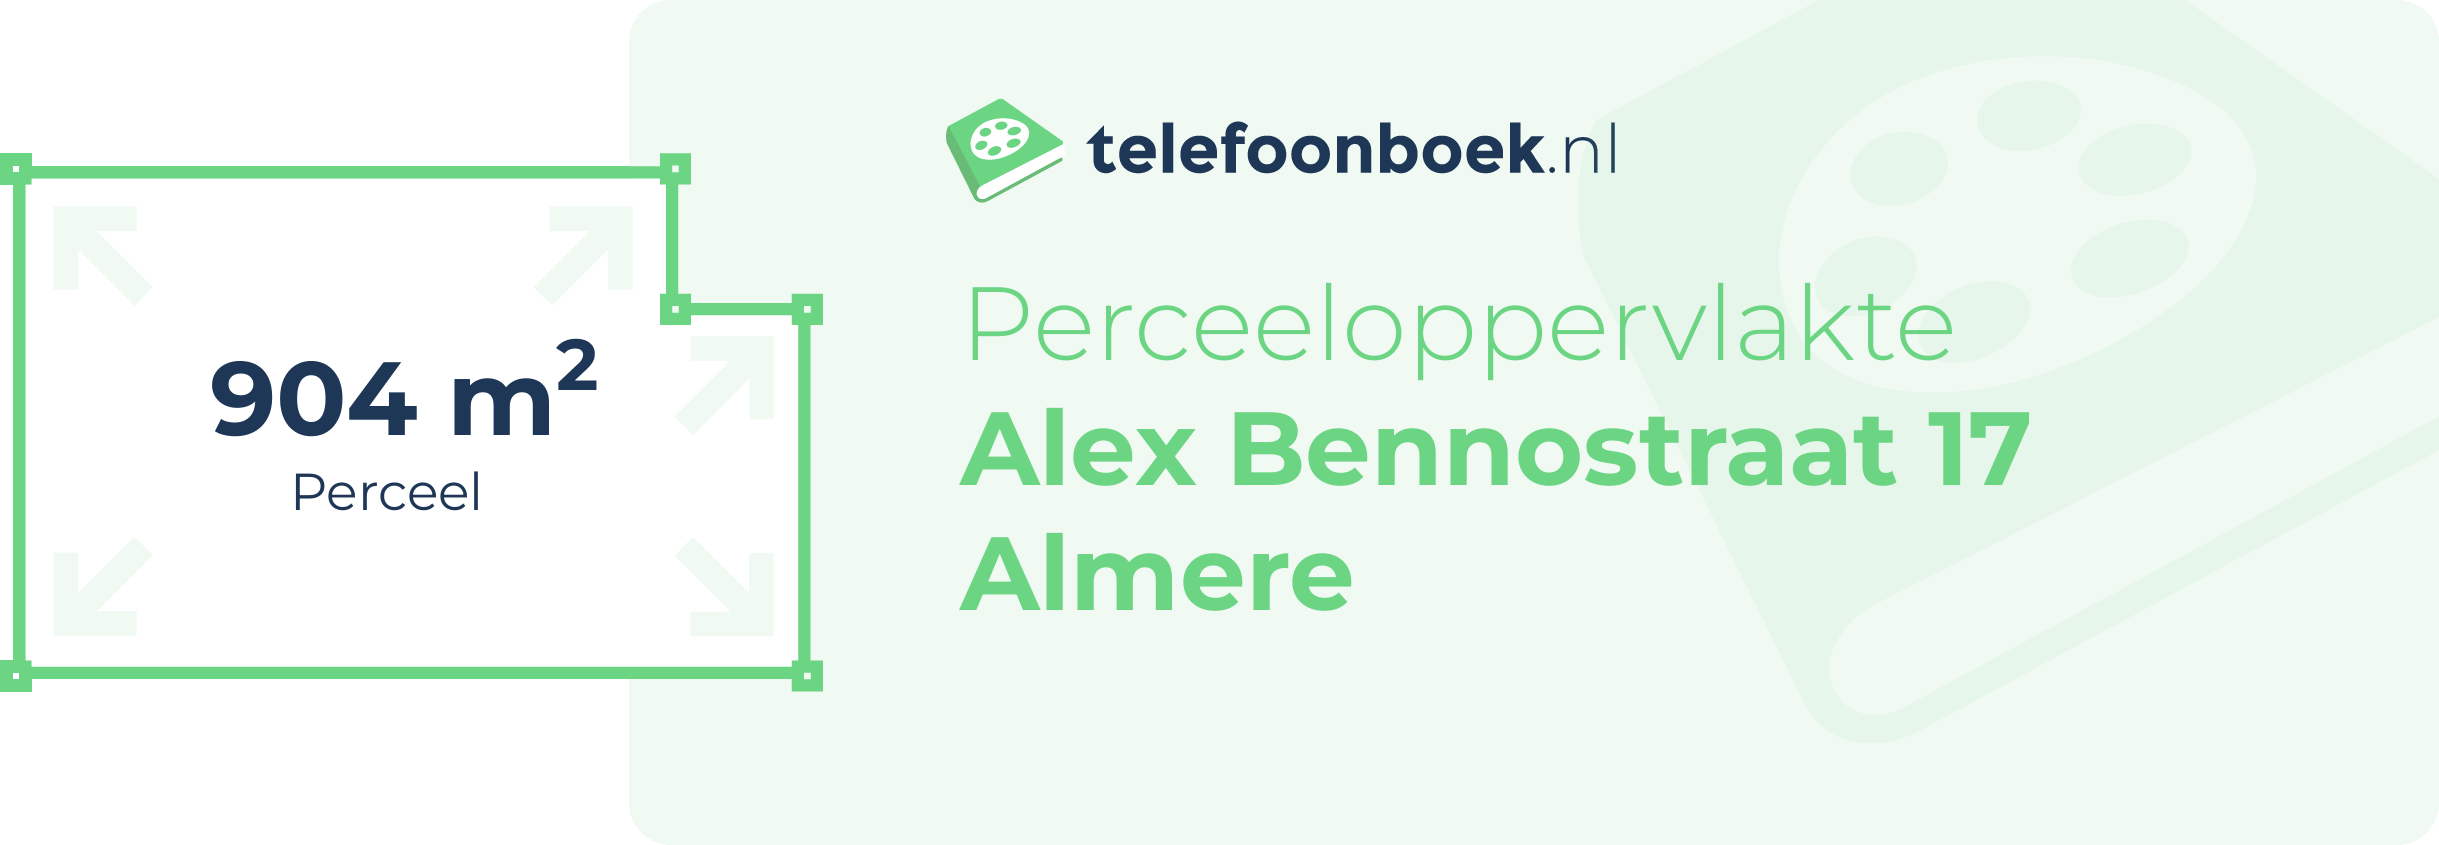 Perceeloppervlakte Alex Bennostraat 17 Almere